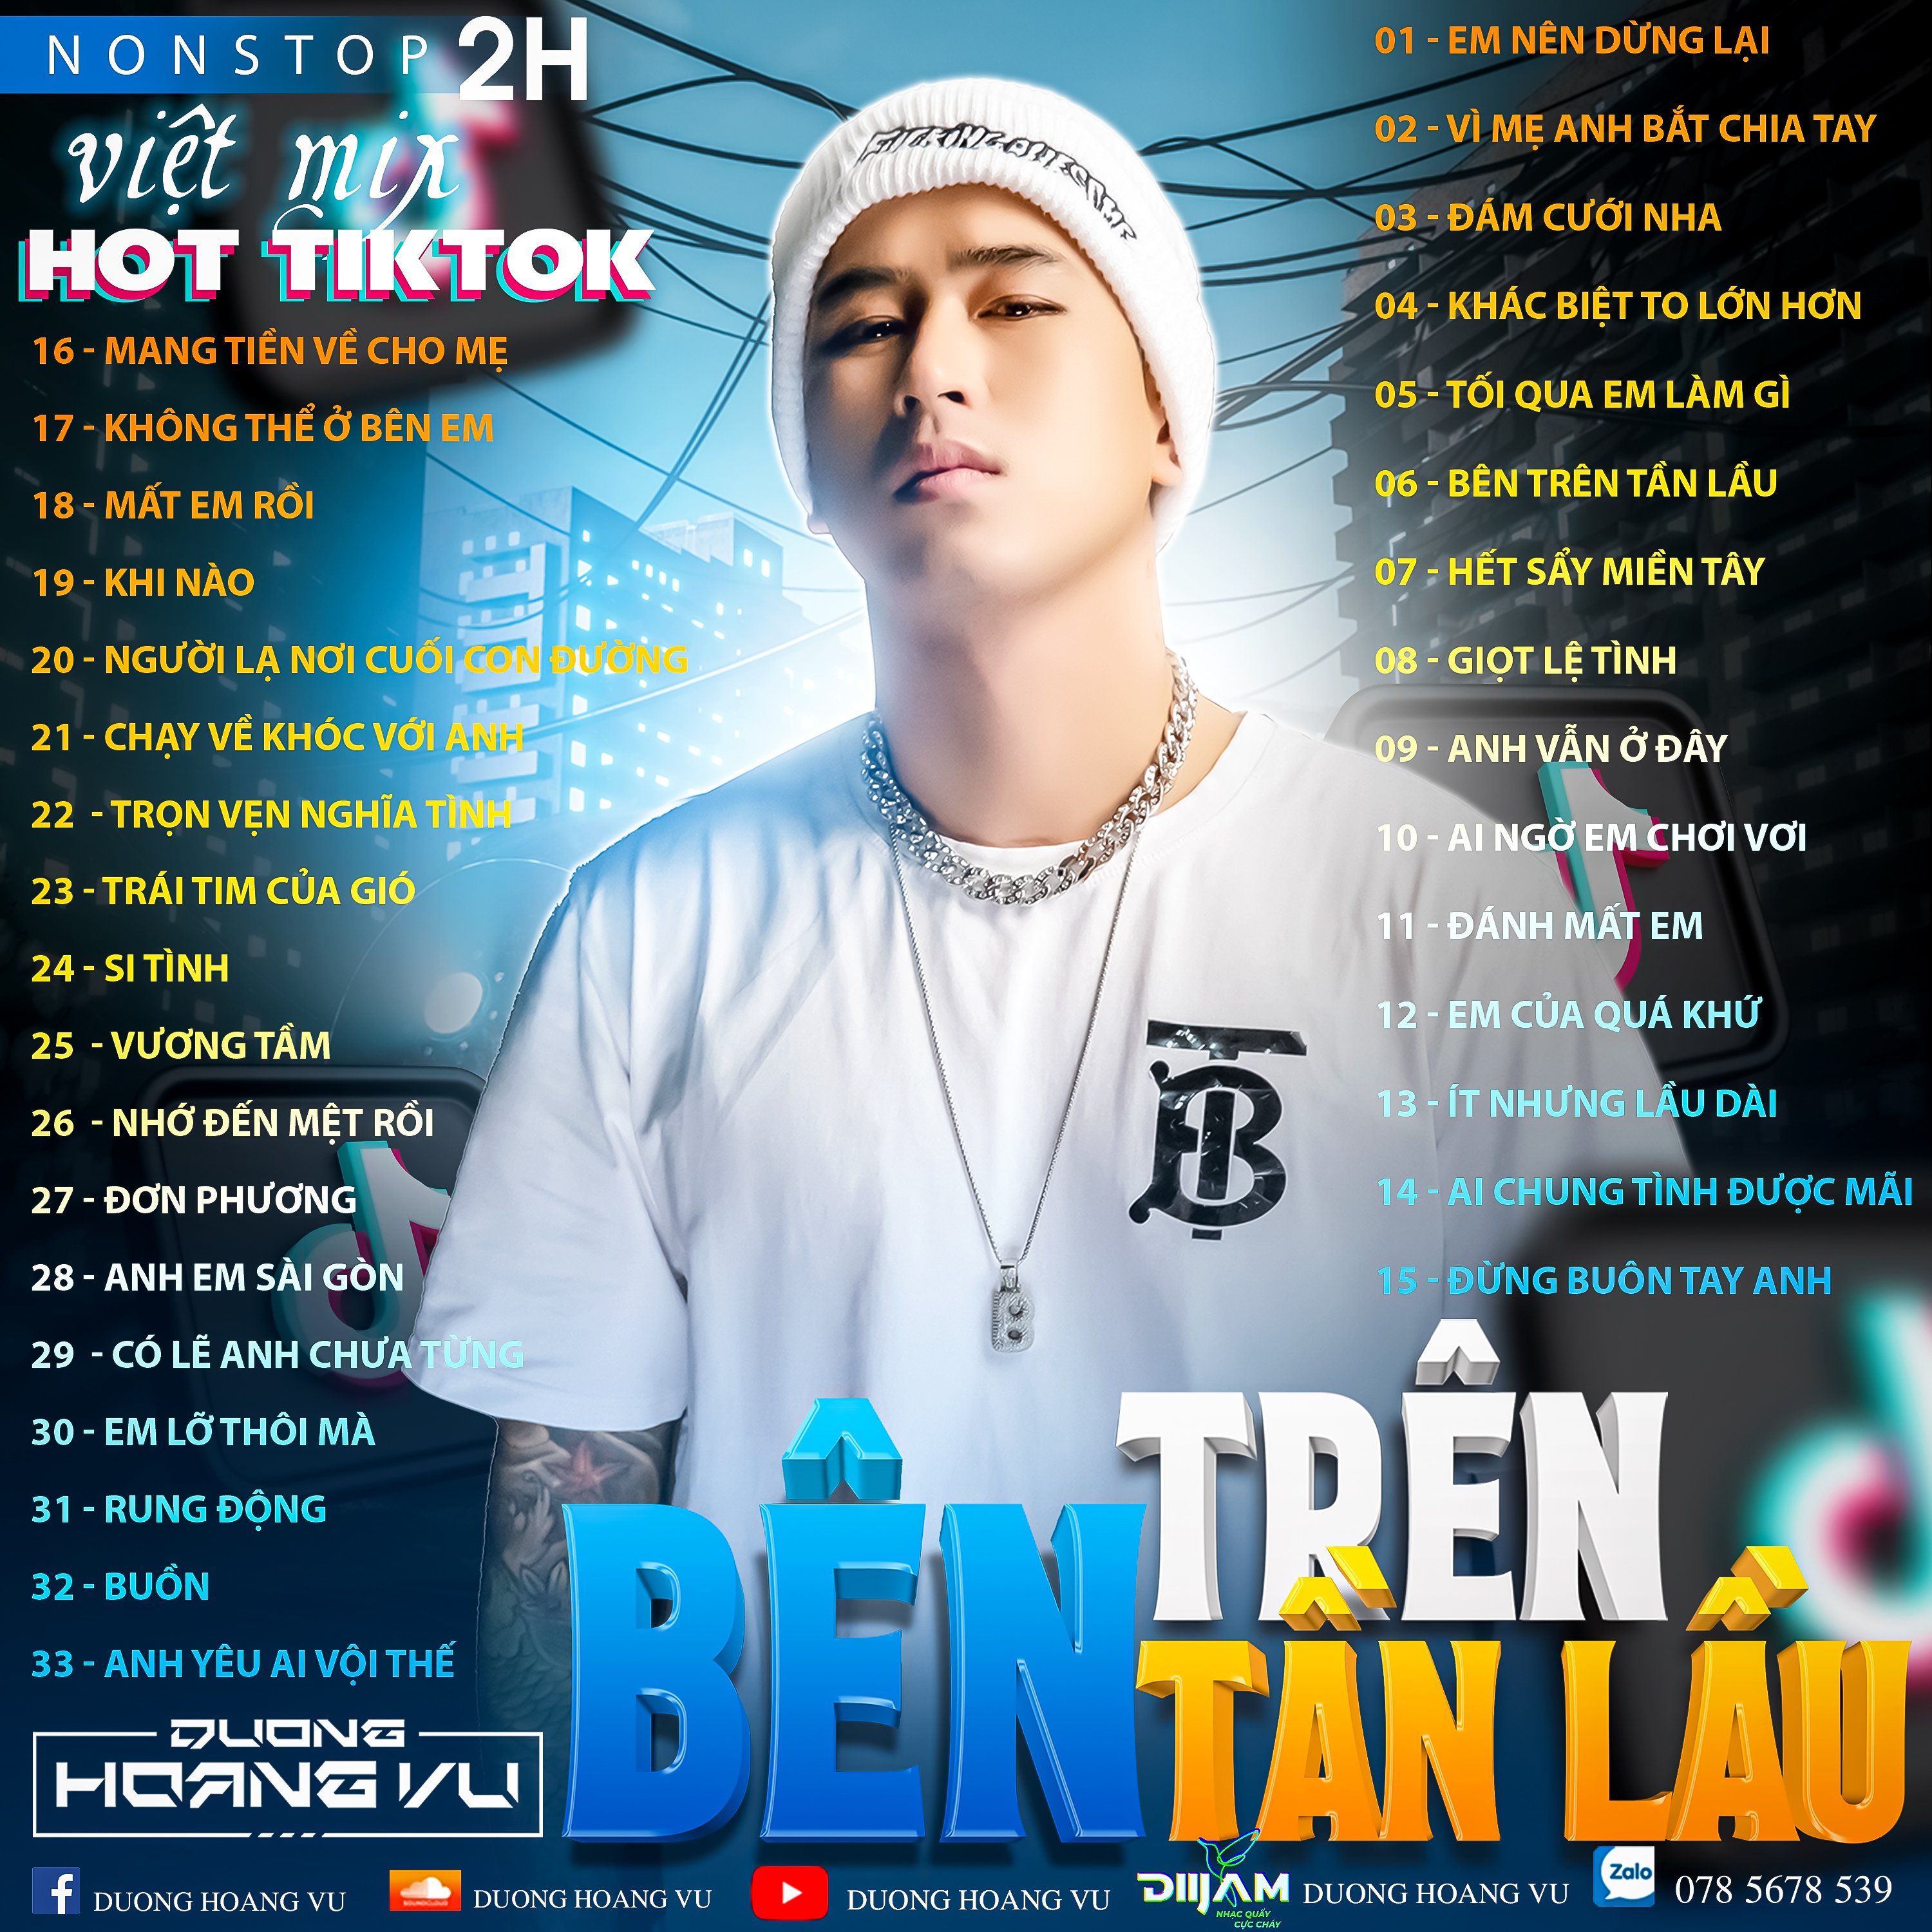 Жүктөө (Demo ) Nst Việt Mix Hot tiktok 2h - 2022 - DJ Dương Hoàng Vũ Mix Mua Full IB Zalo 078.5678.539